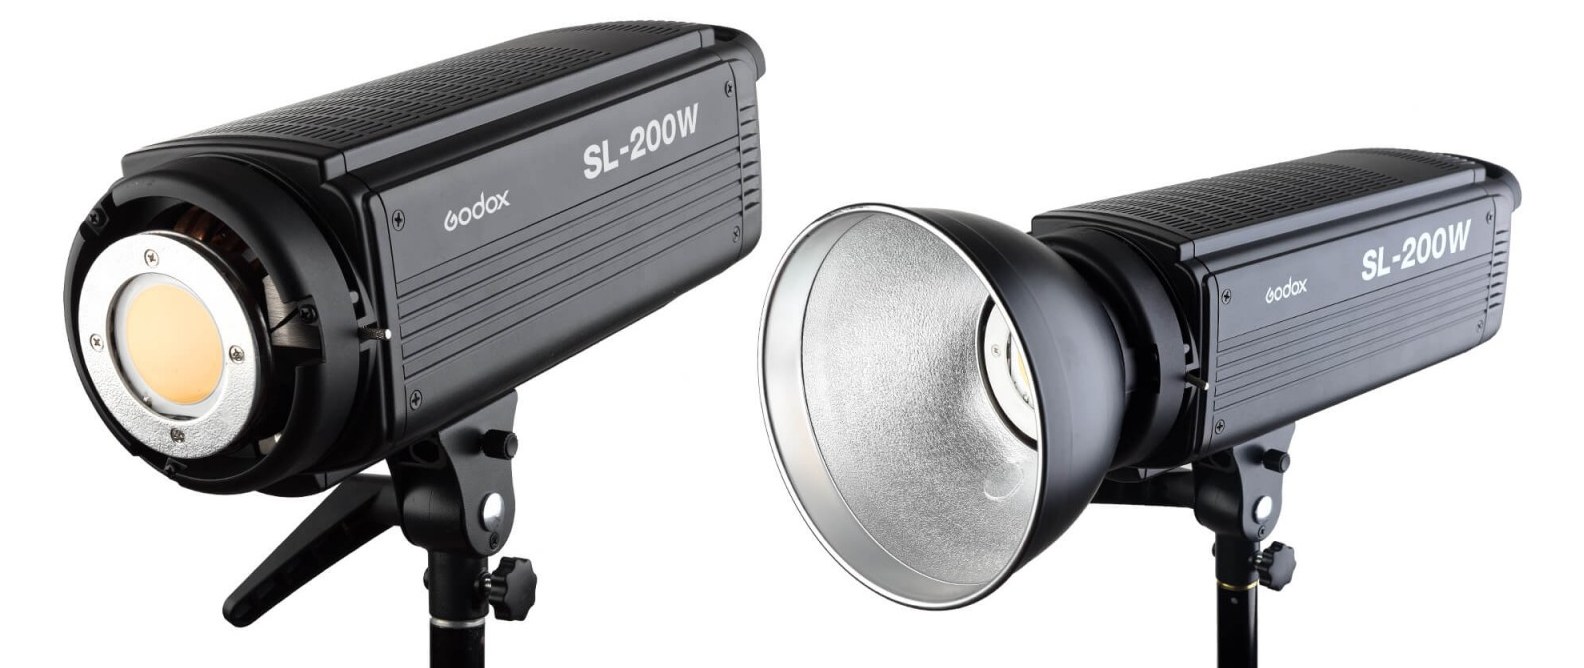 Godox SL-200 LED